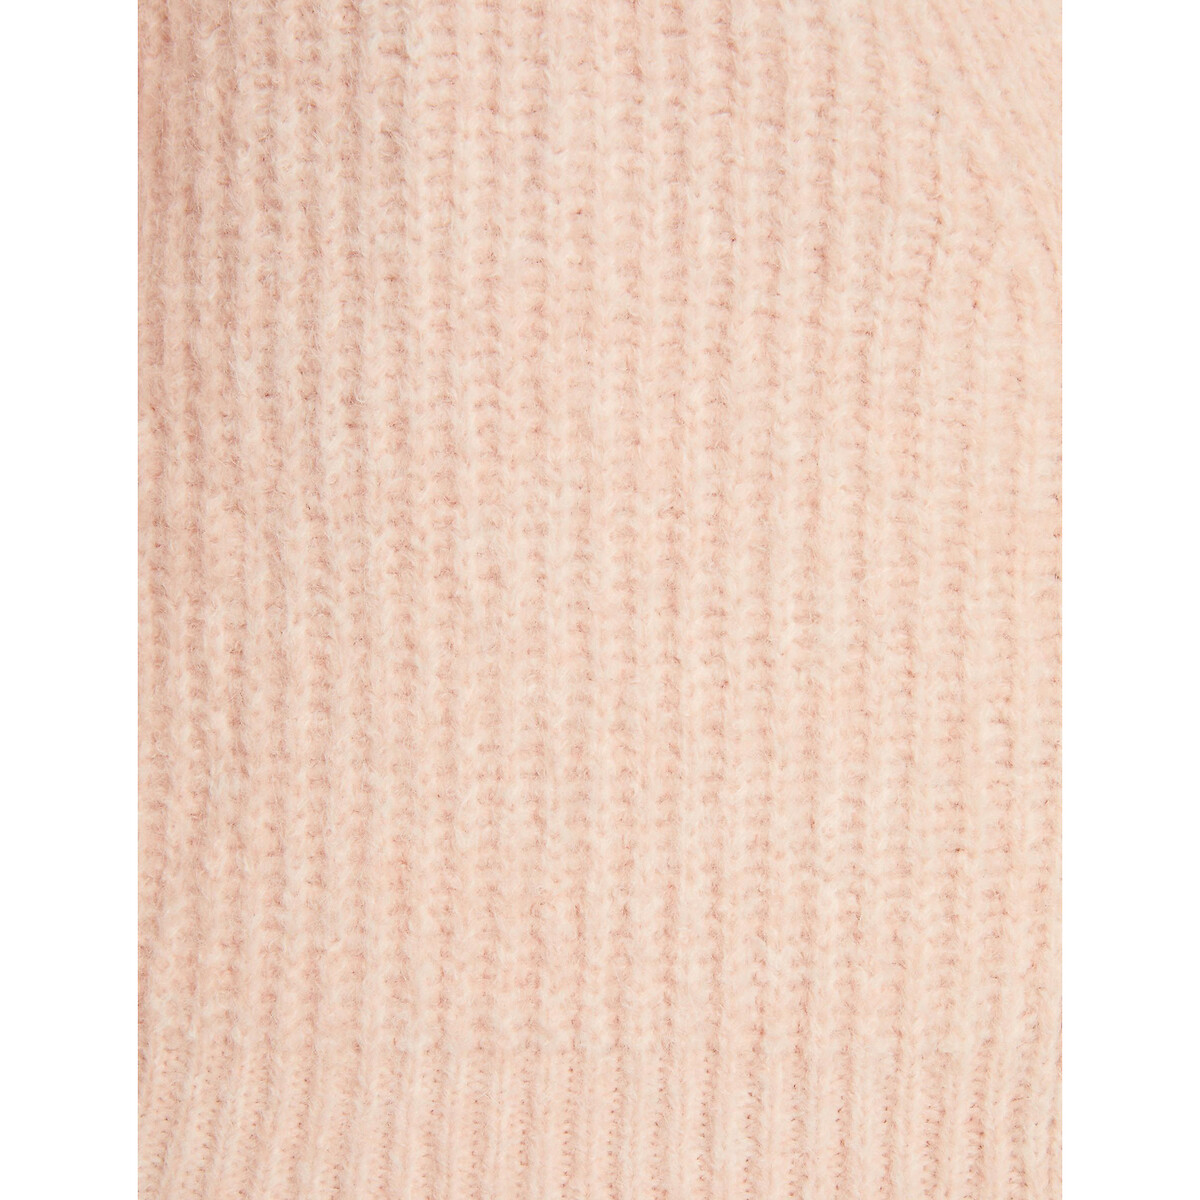 Пуловер рифленый с длинными рукавами вставка на молнии  S белый LaRedoute, размер S - фото 5